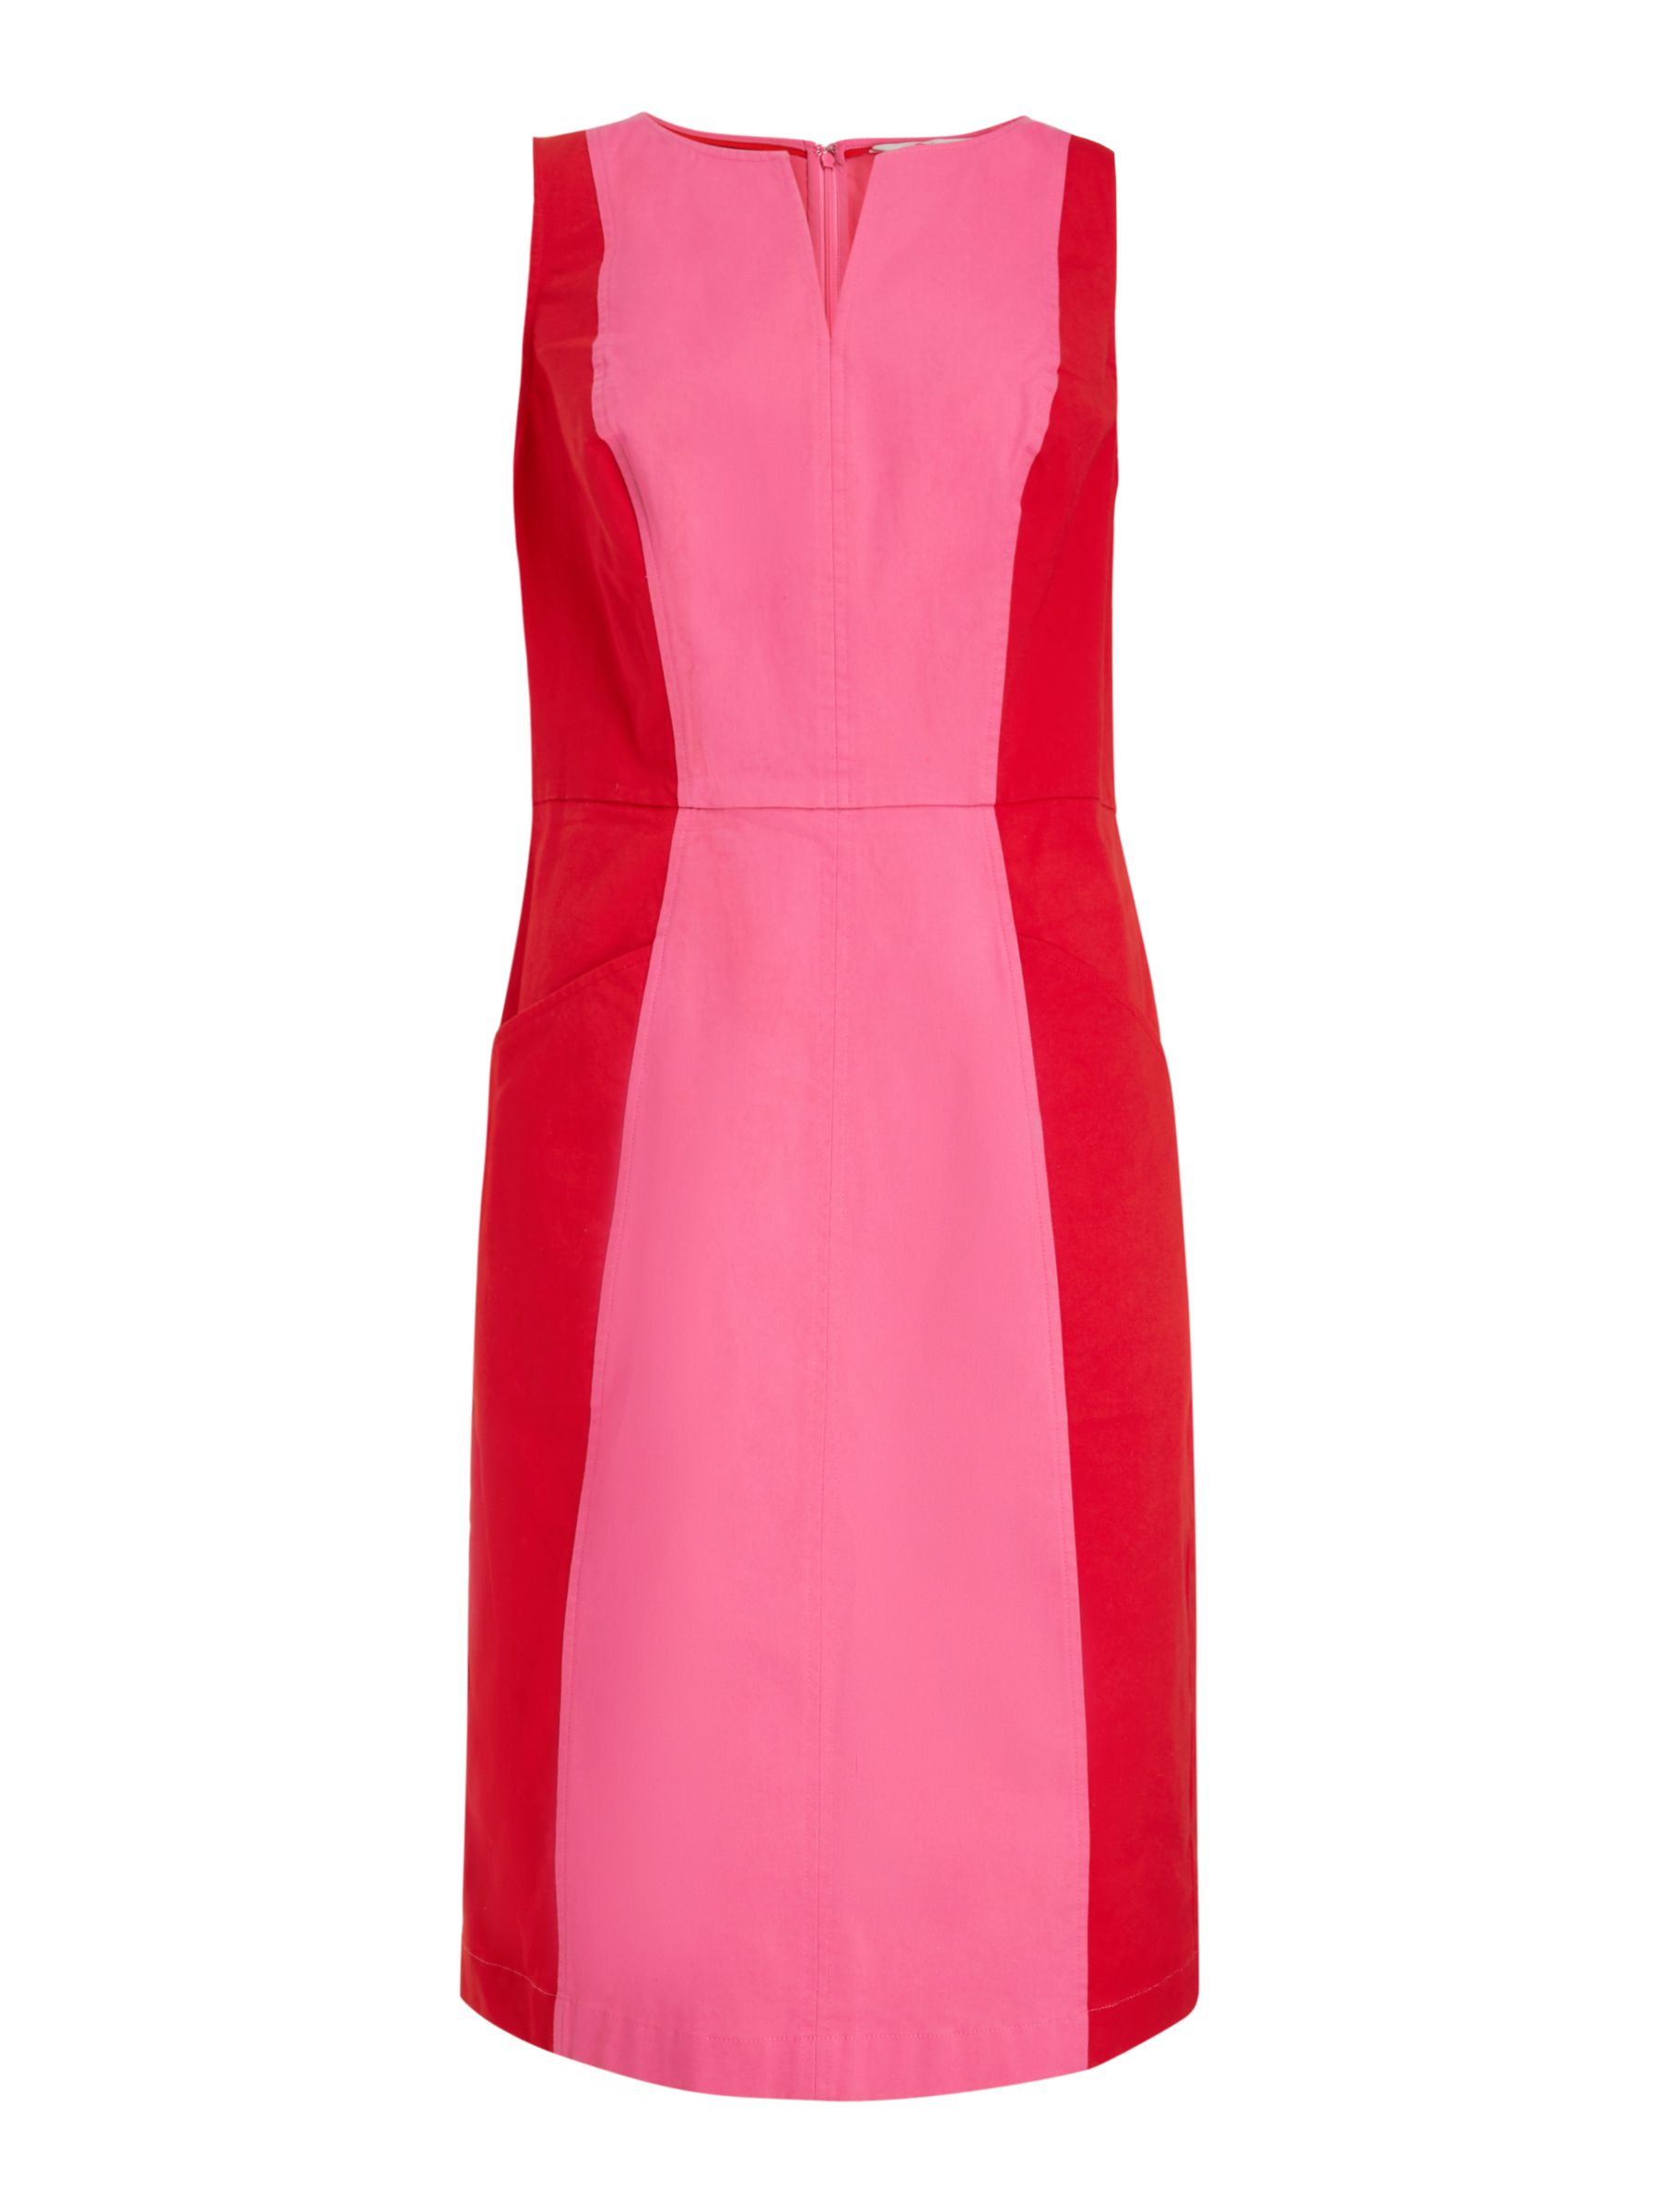 Boden Helena Colour Block Mini Dress, Bright Camellia